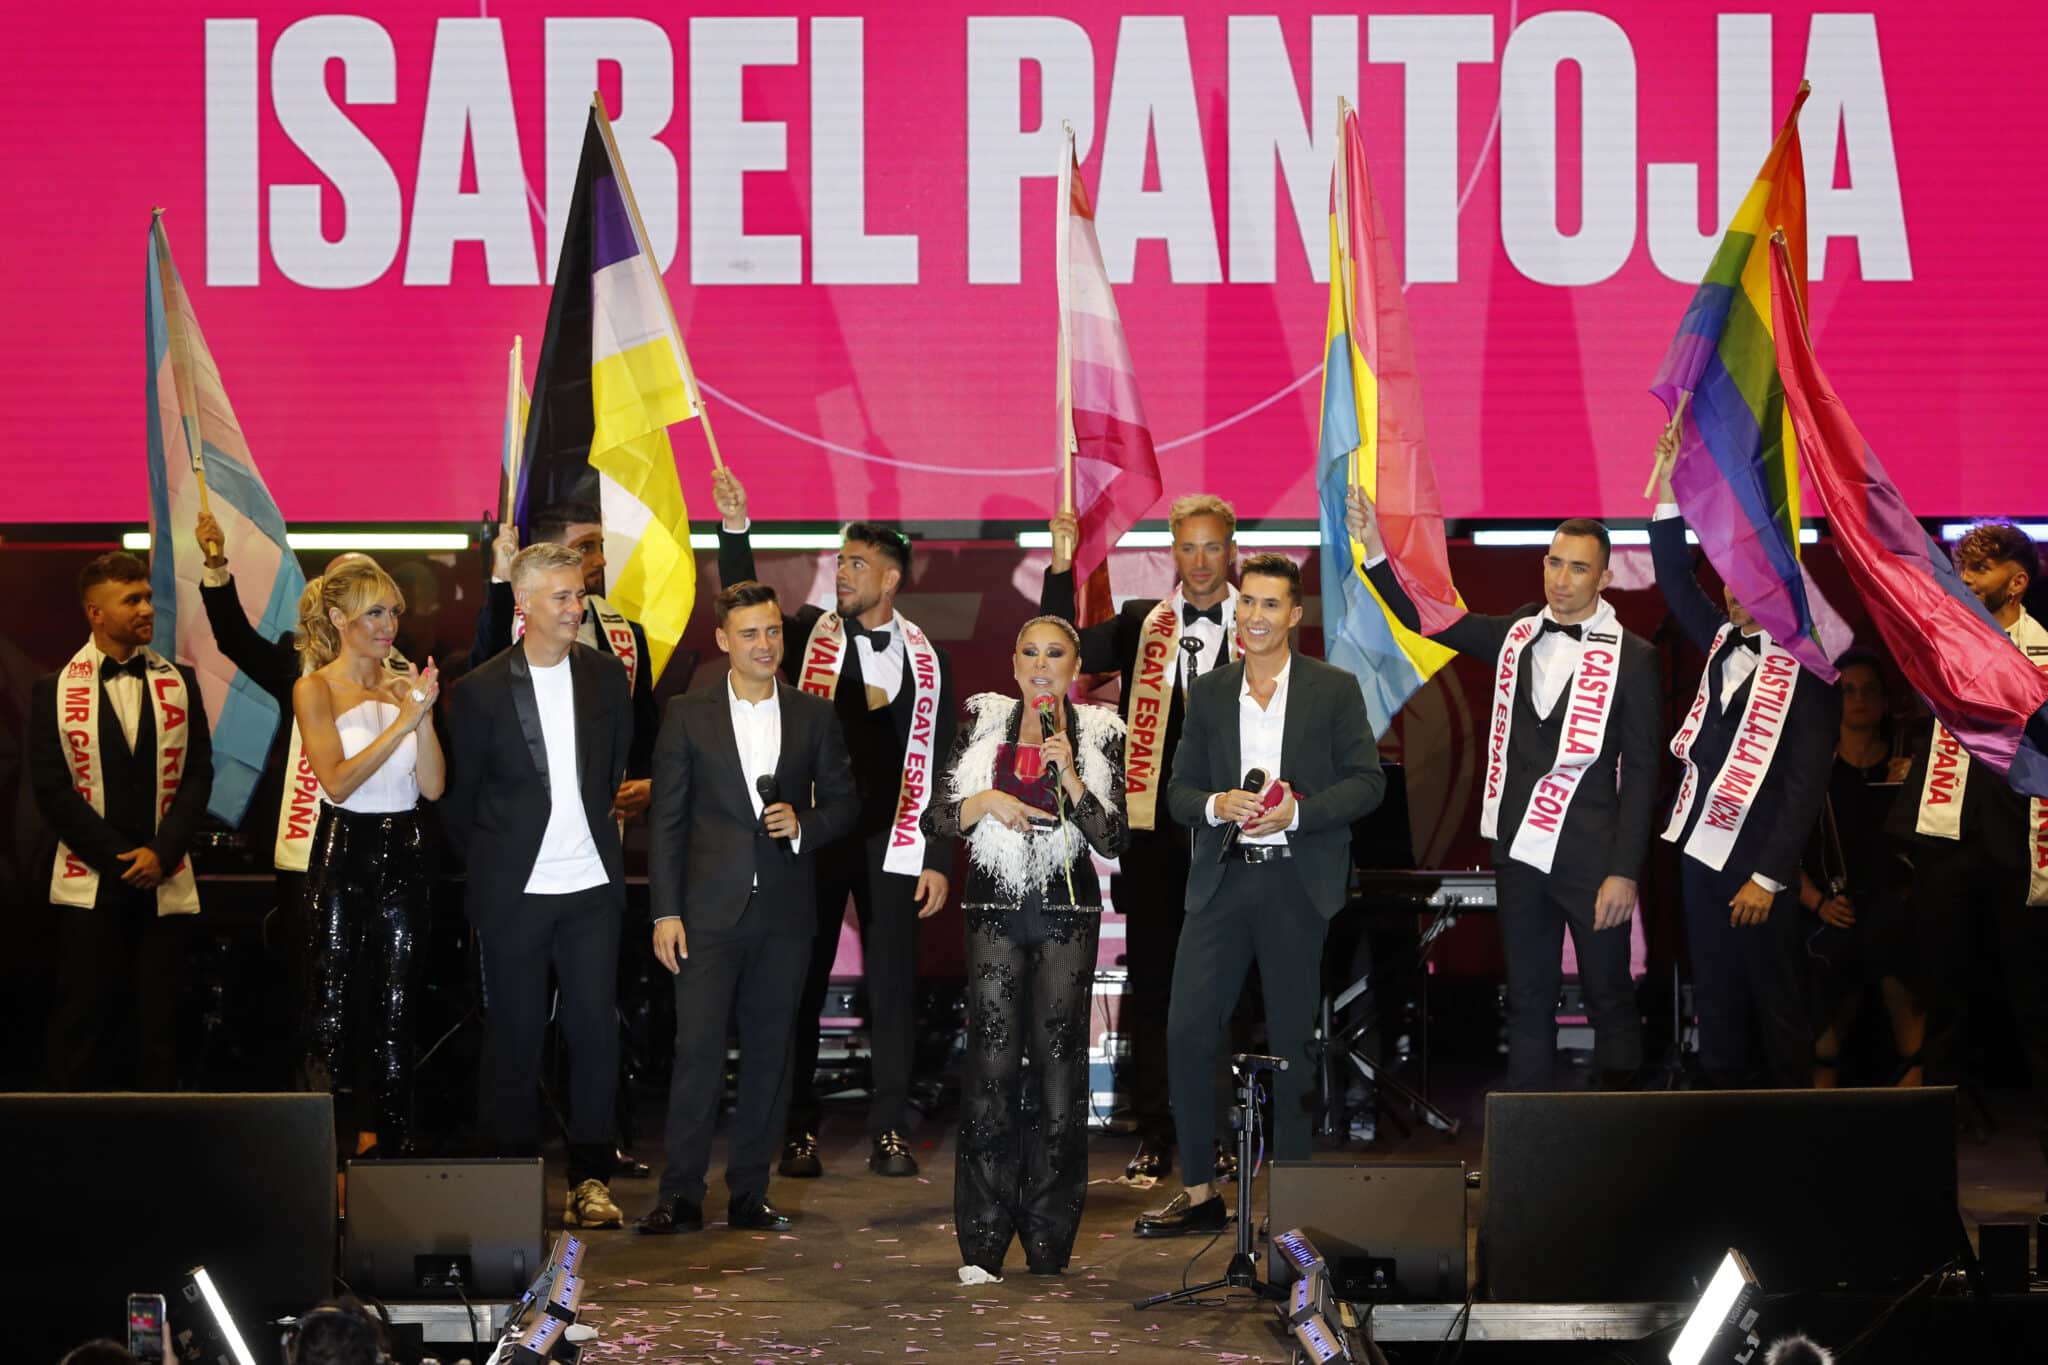 La cantante Isabel Pantoja tras recibir el premio "Mr. Gay 2022" durante el certamen "Mr. Gay España" que se celebró el viernes en la Plaza España de Madrid.